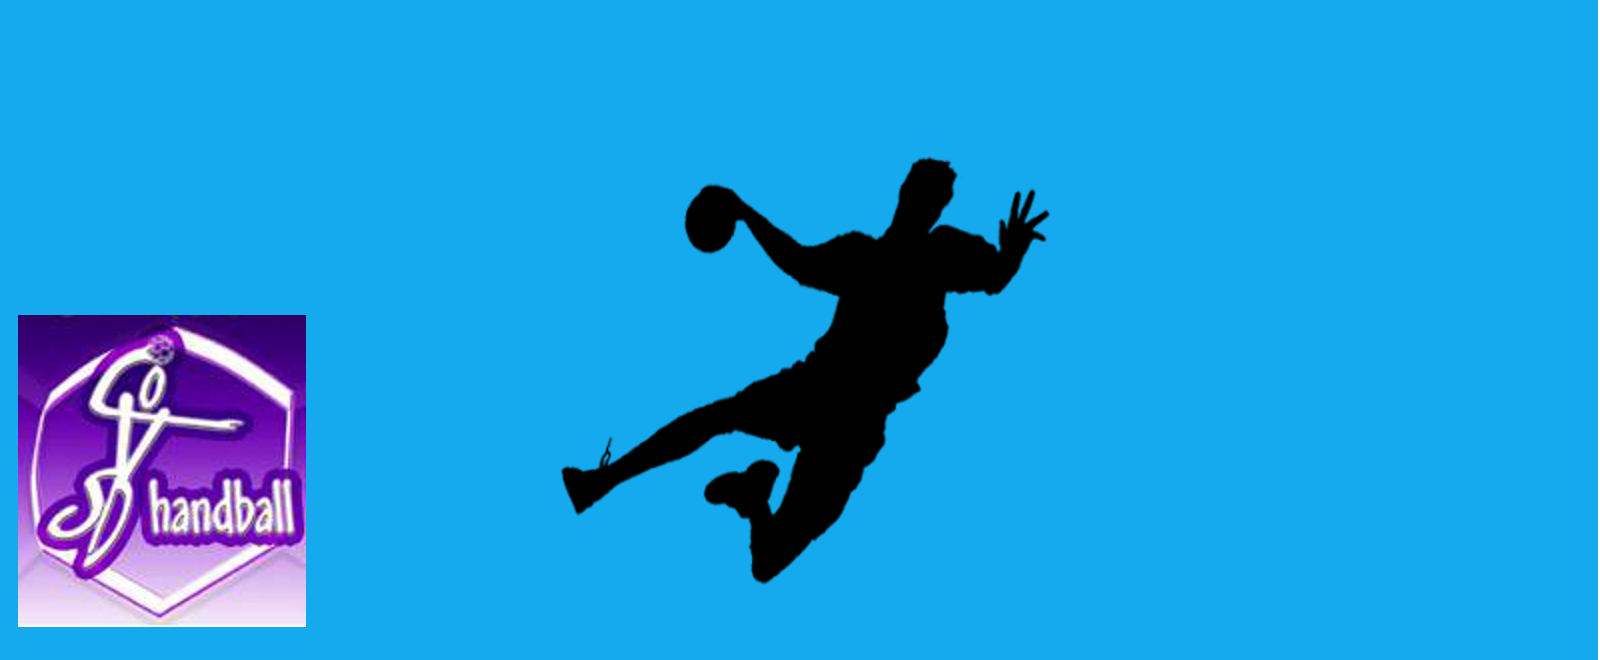 sportif handball